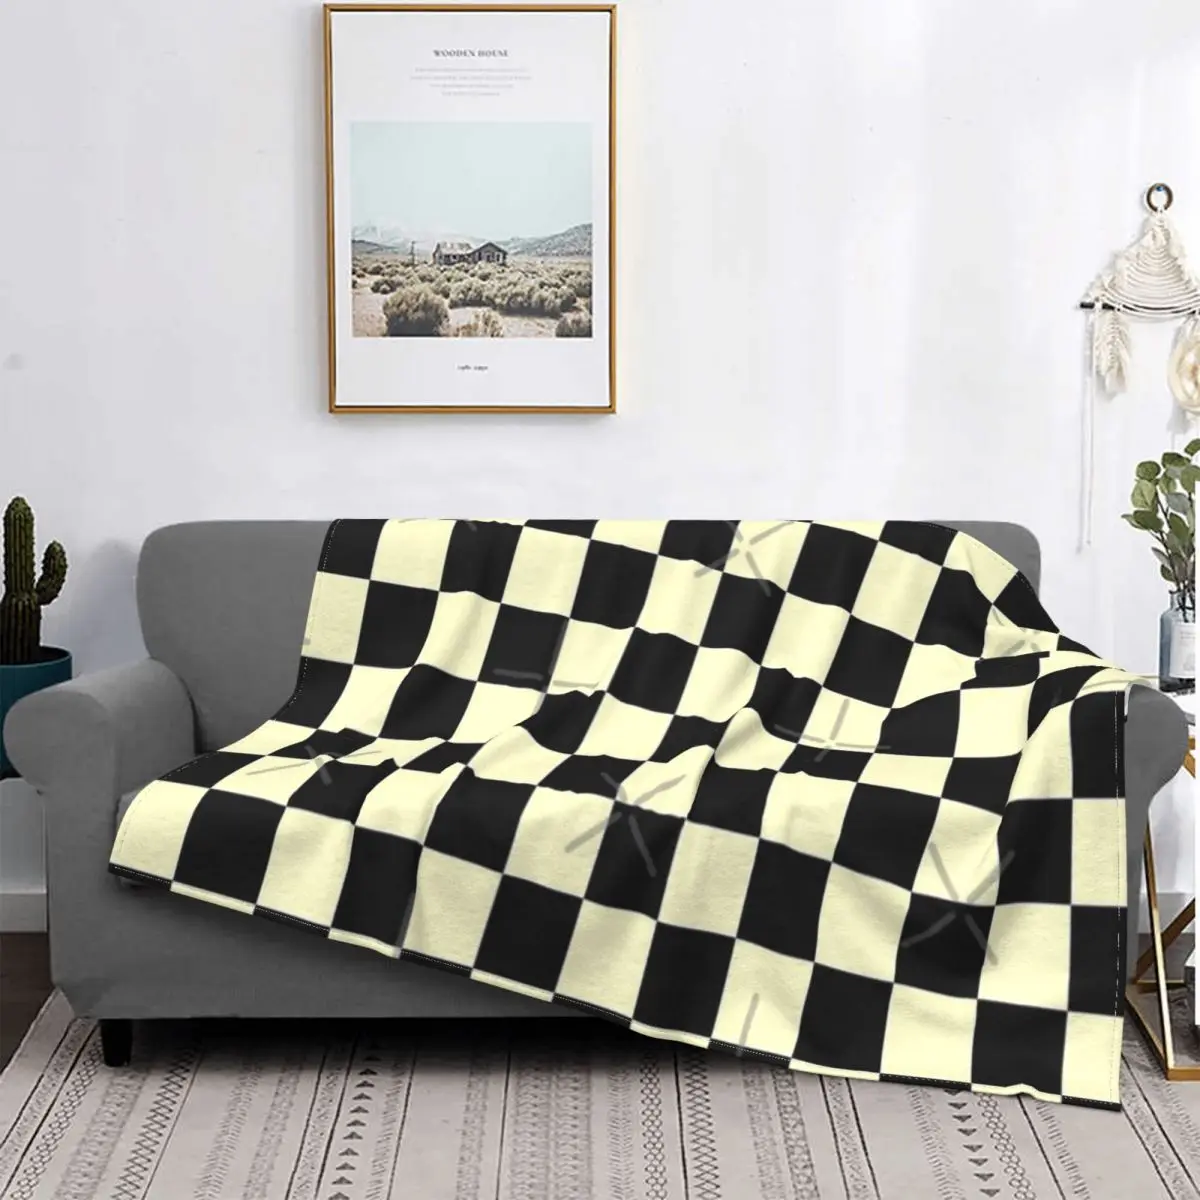 

Manta con estampado de cuadros en color negro y crema, colcha para cama, sofá de lino, manta de lana, toalla de playa de lujo